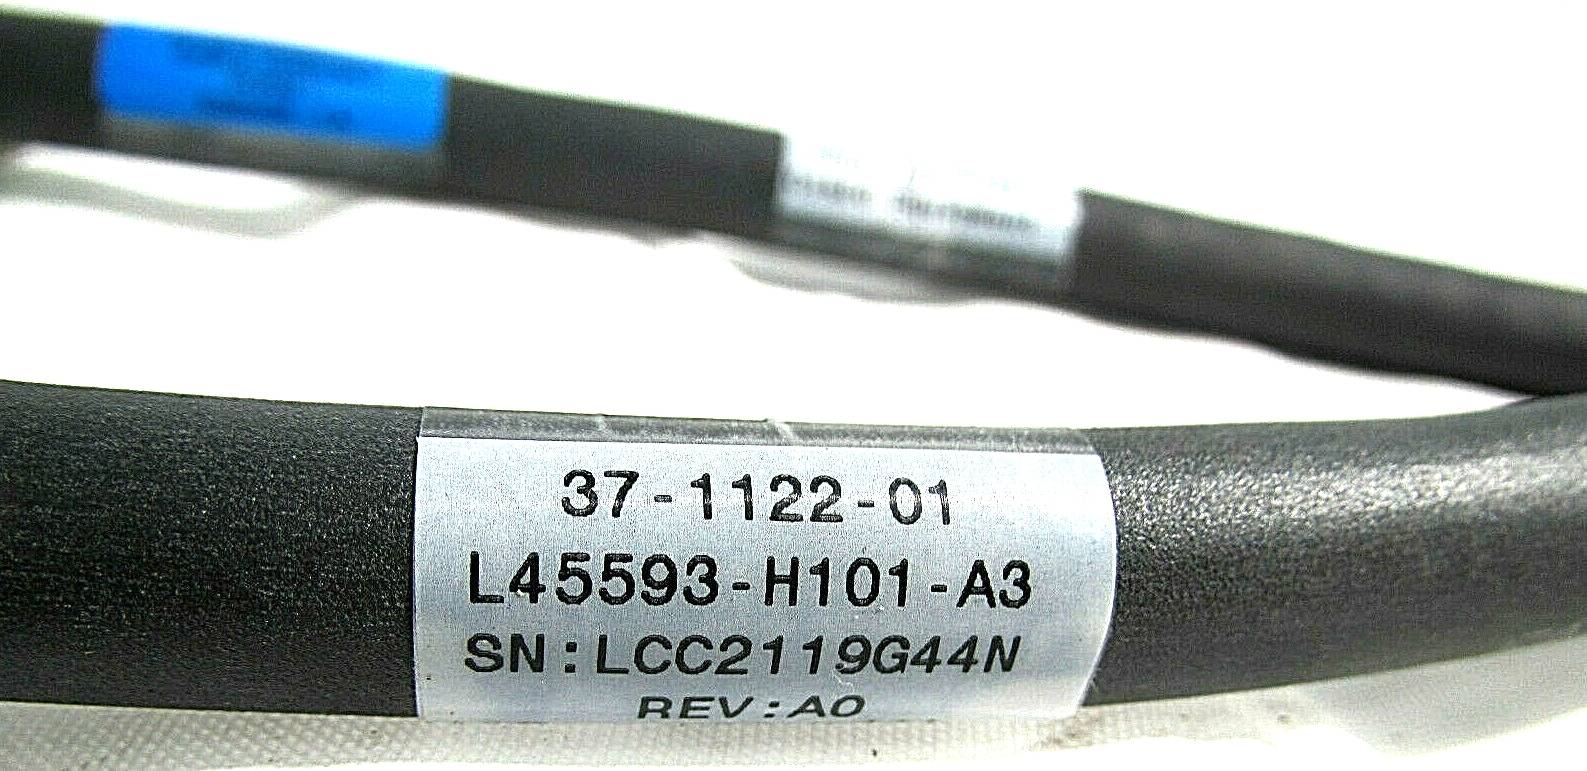 conector-de-cables-37-1122-01-de-cisco-l45593-h101-a3-idkmanager2.jpg